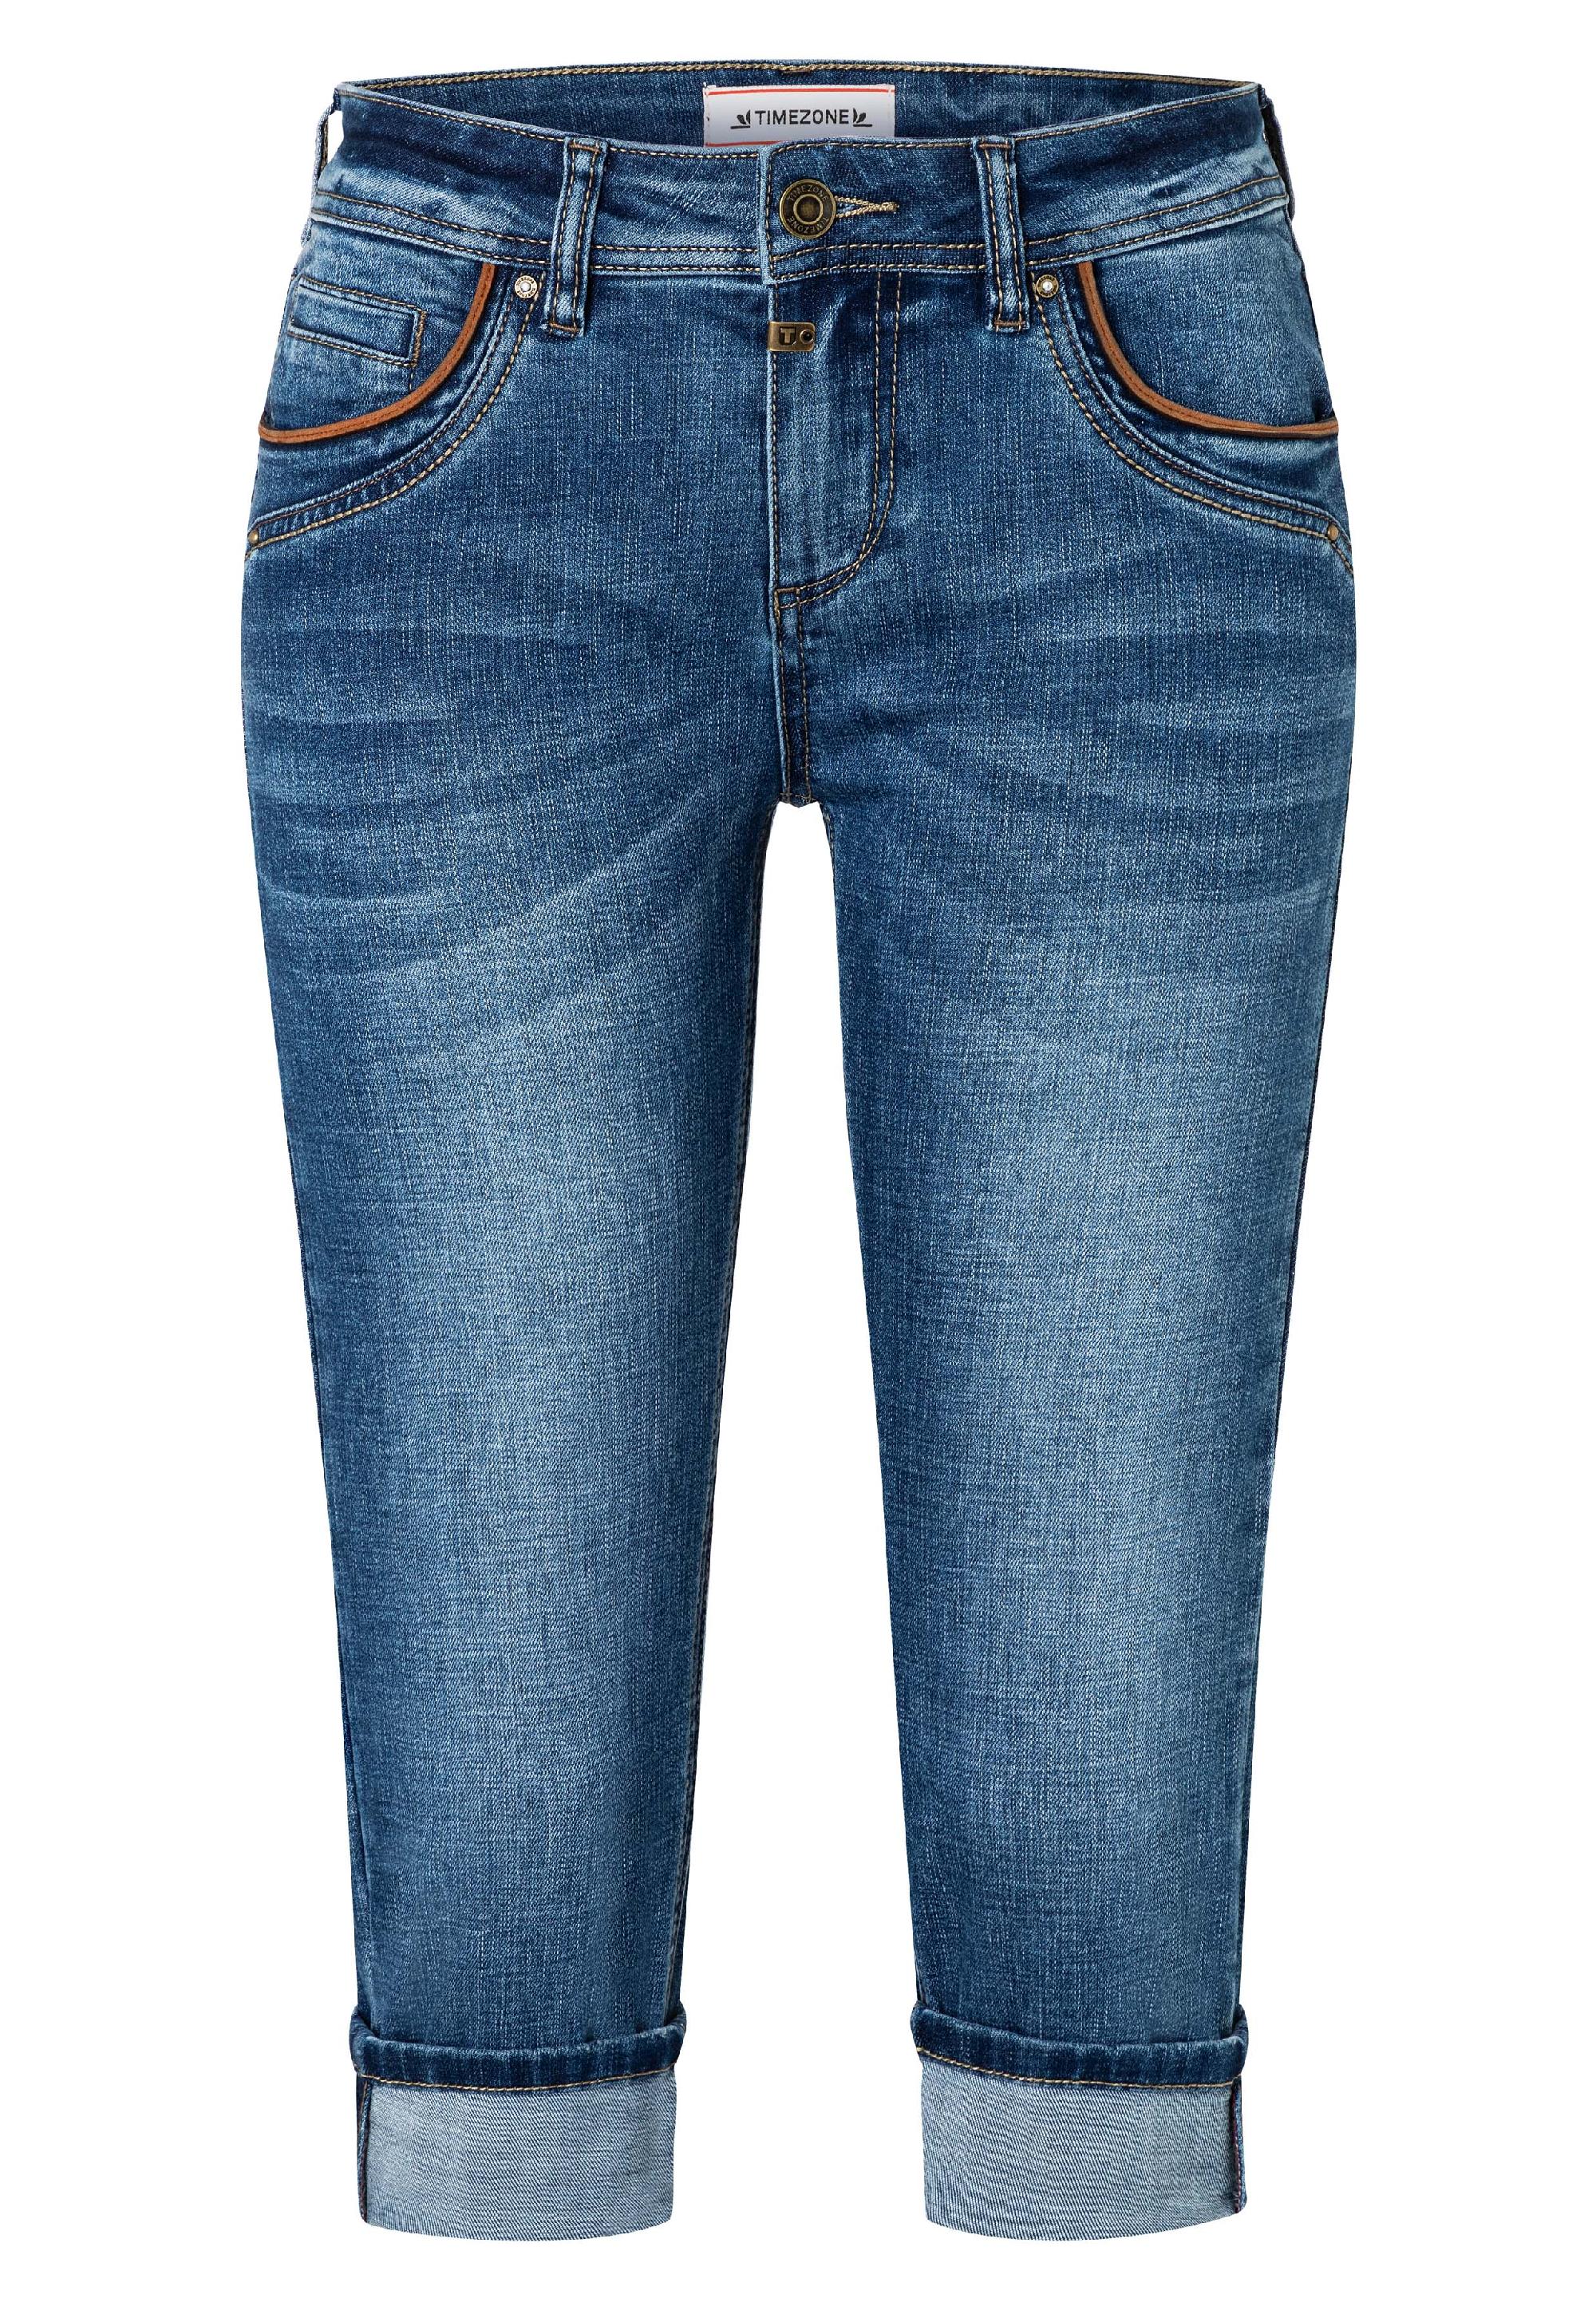 Damen Jeans aus Flex-Denim mit Lederdetails von TIMEZONE